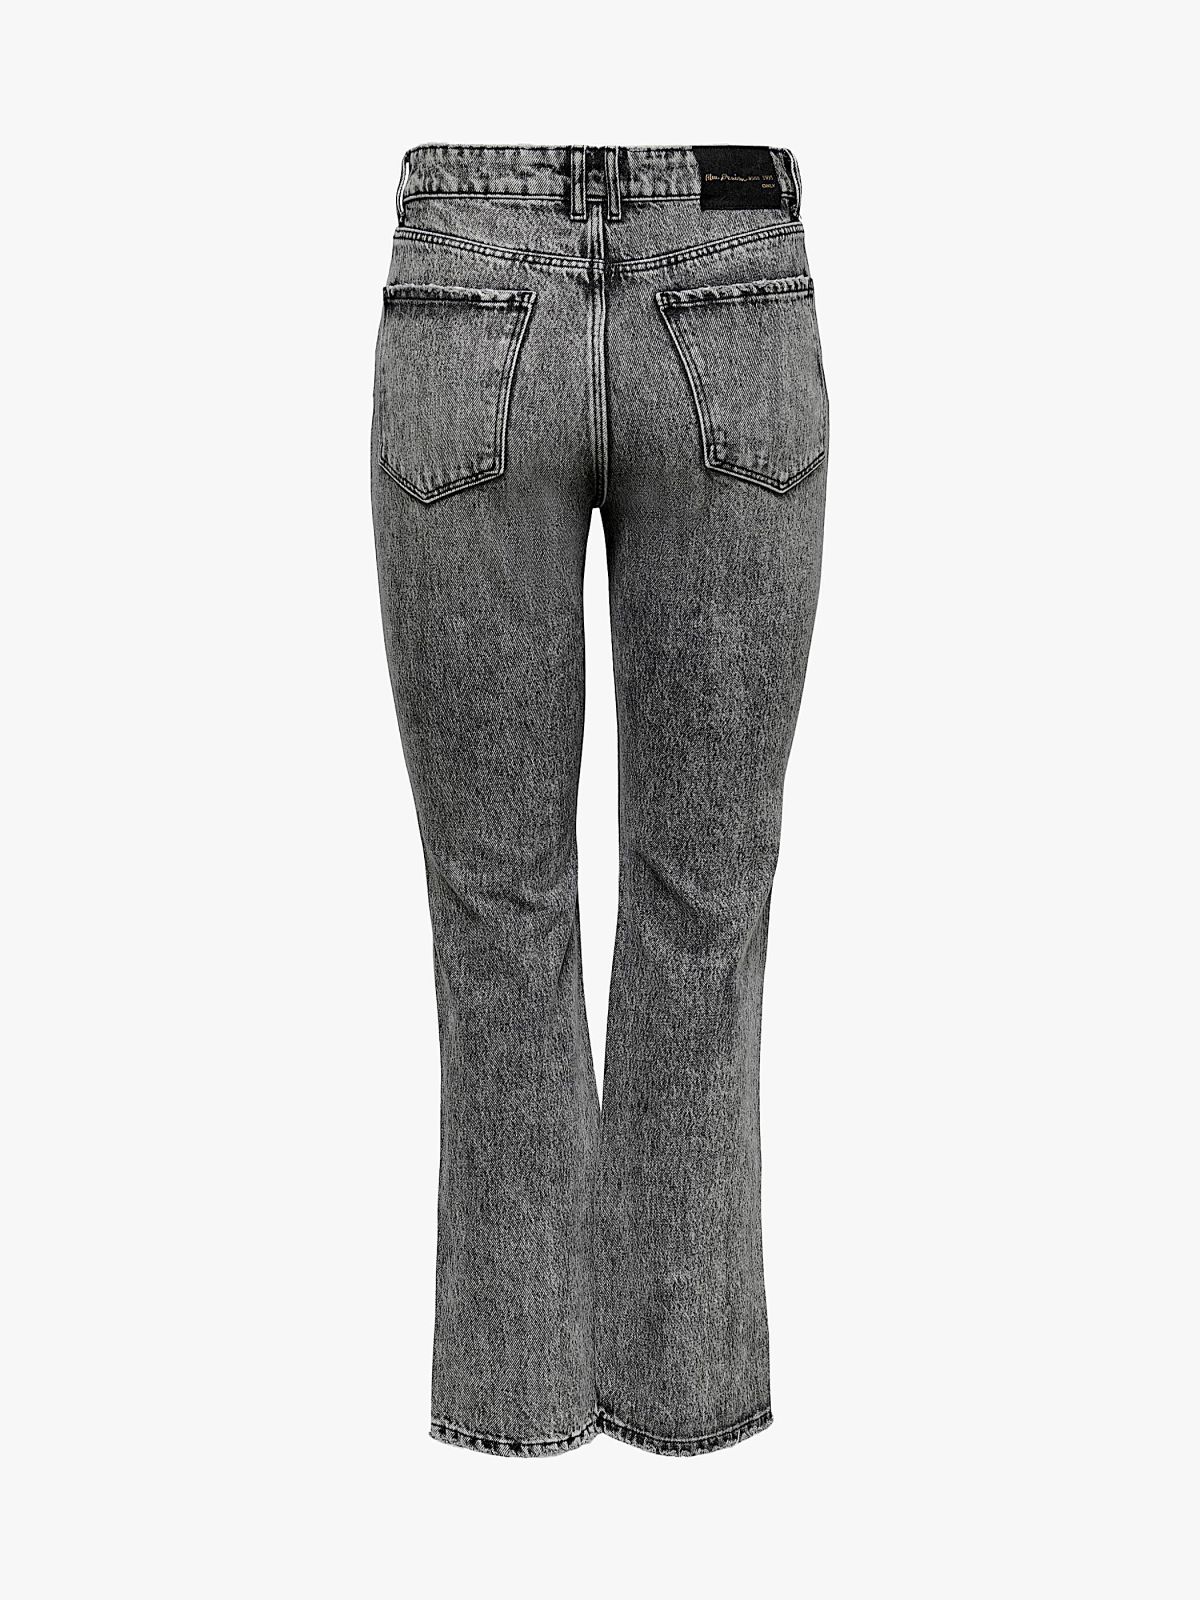  ג'ינס בגזרה מתרחבת עם קרעים / נשים של ONLY